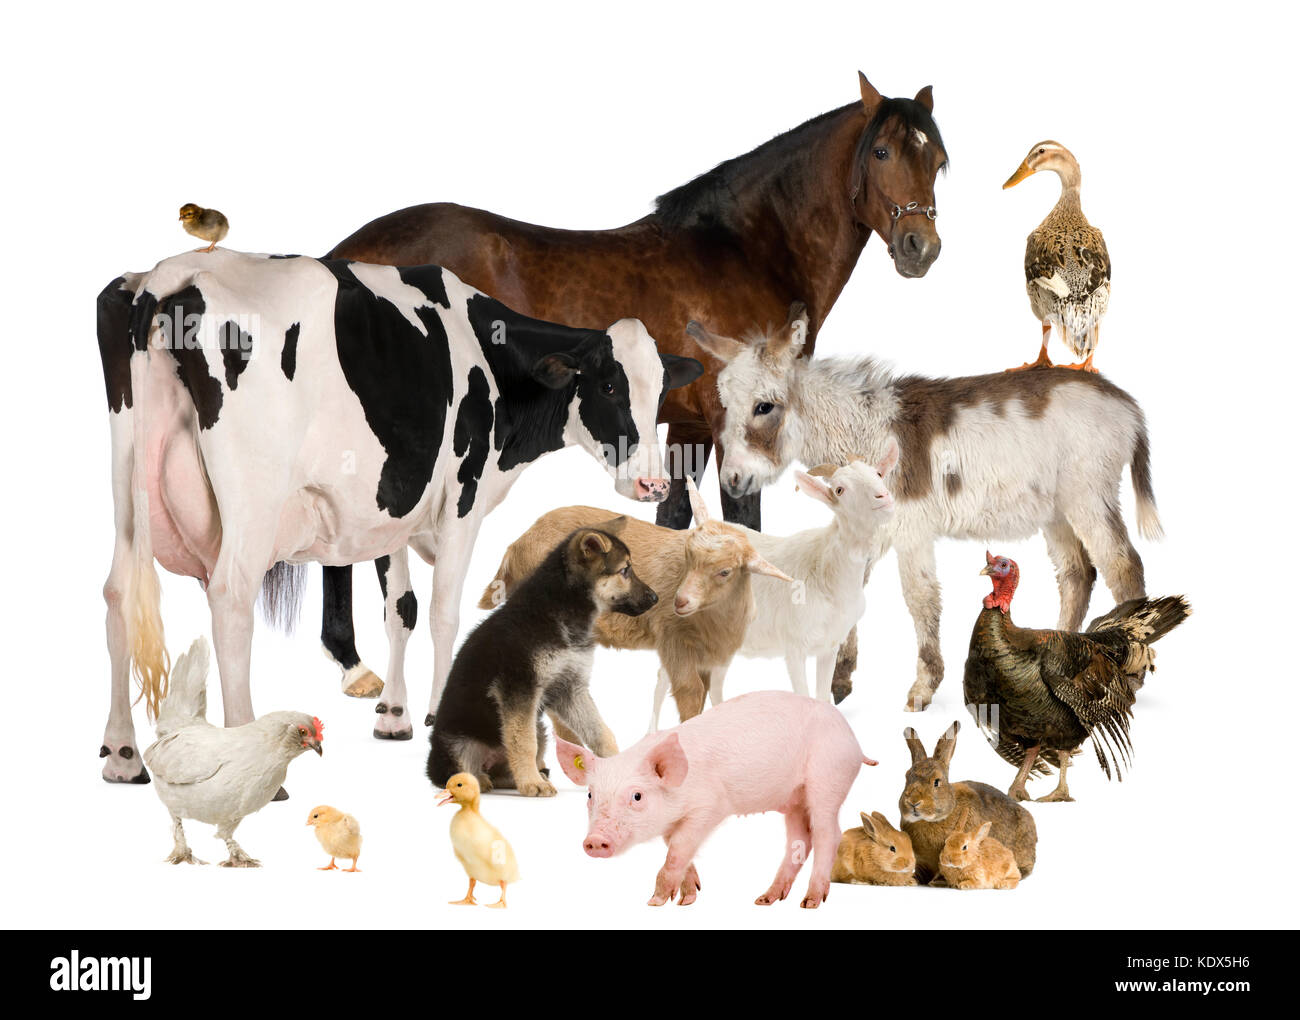 Groupe d'animaux de ferme : cheval, vache, cochon, chien, poule, Poussin, lapin, canard, dinde, âne Banque D'Images